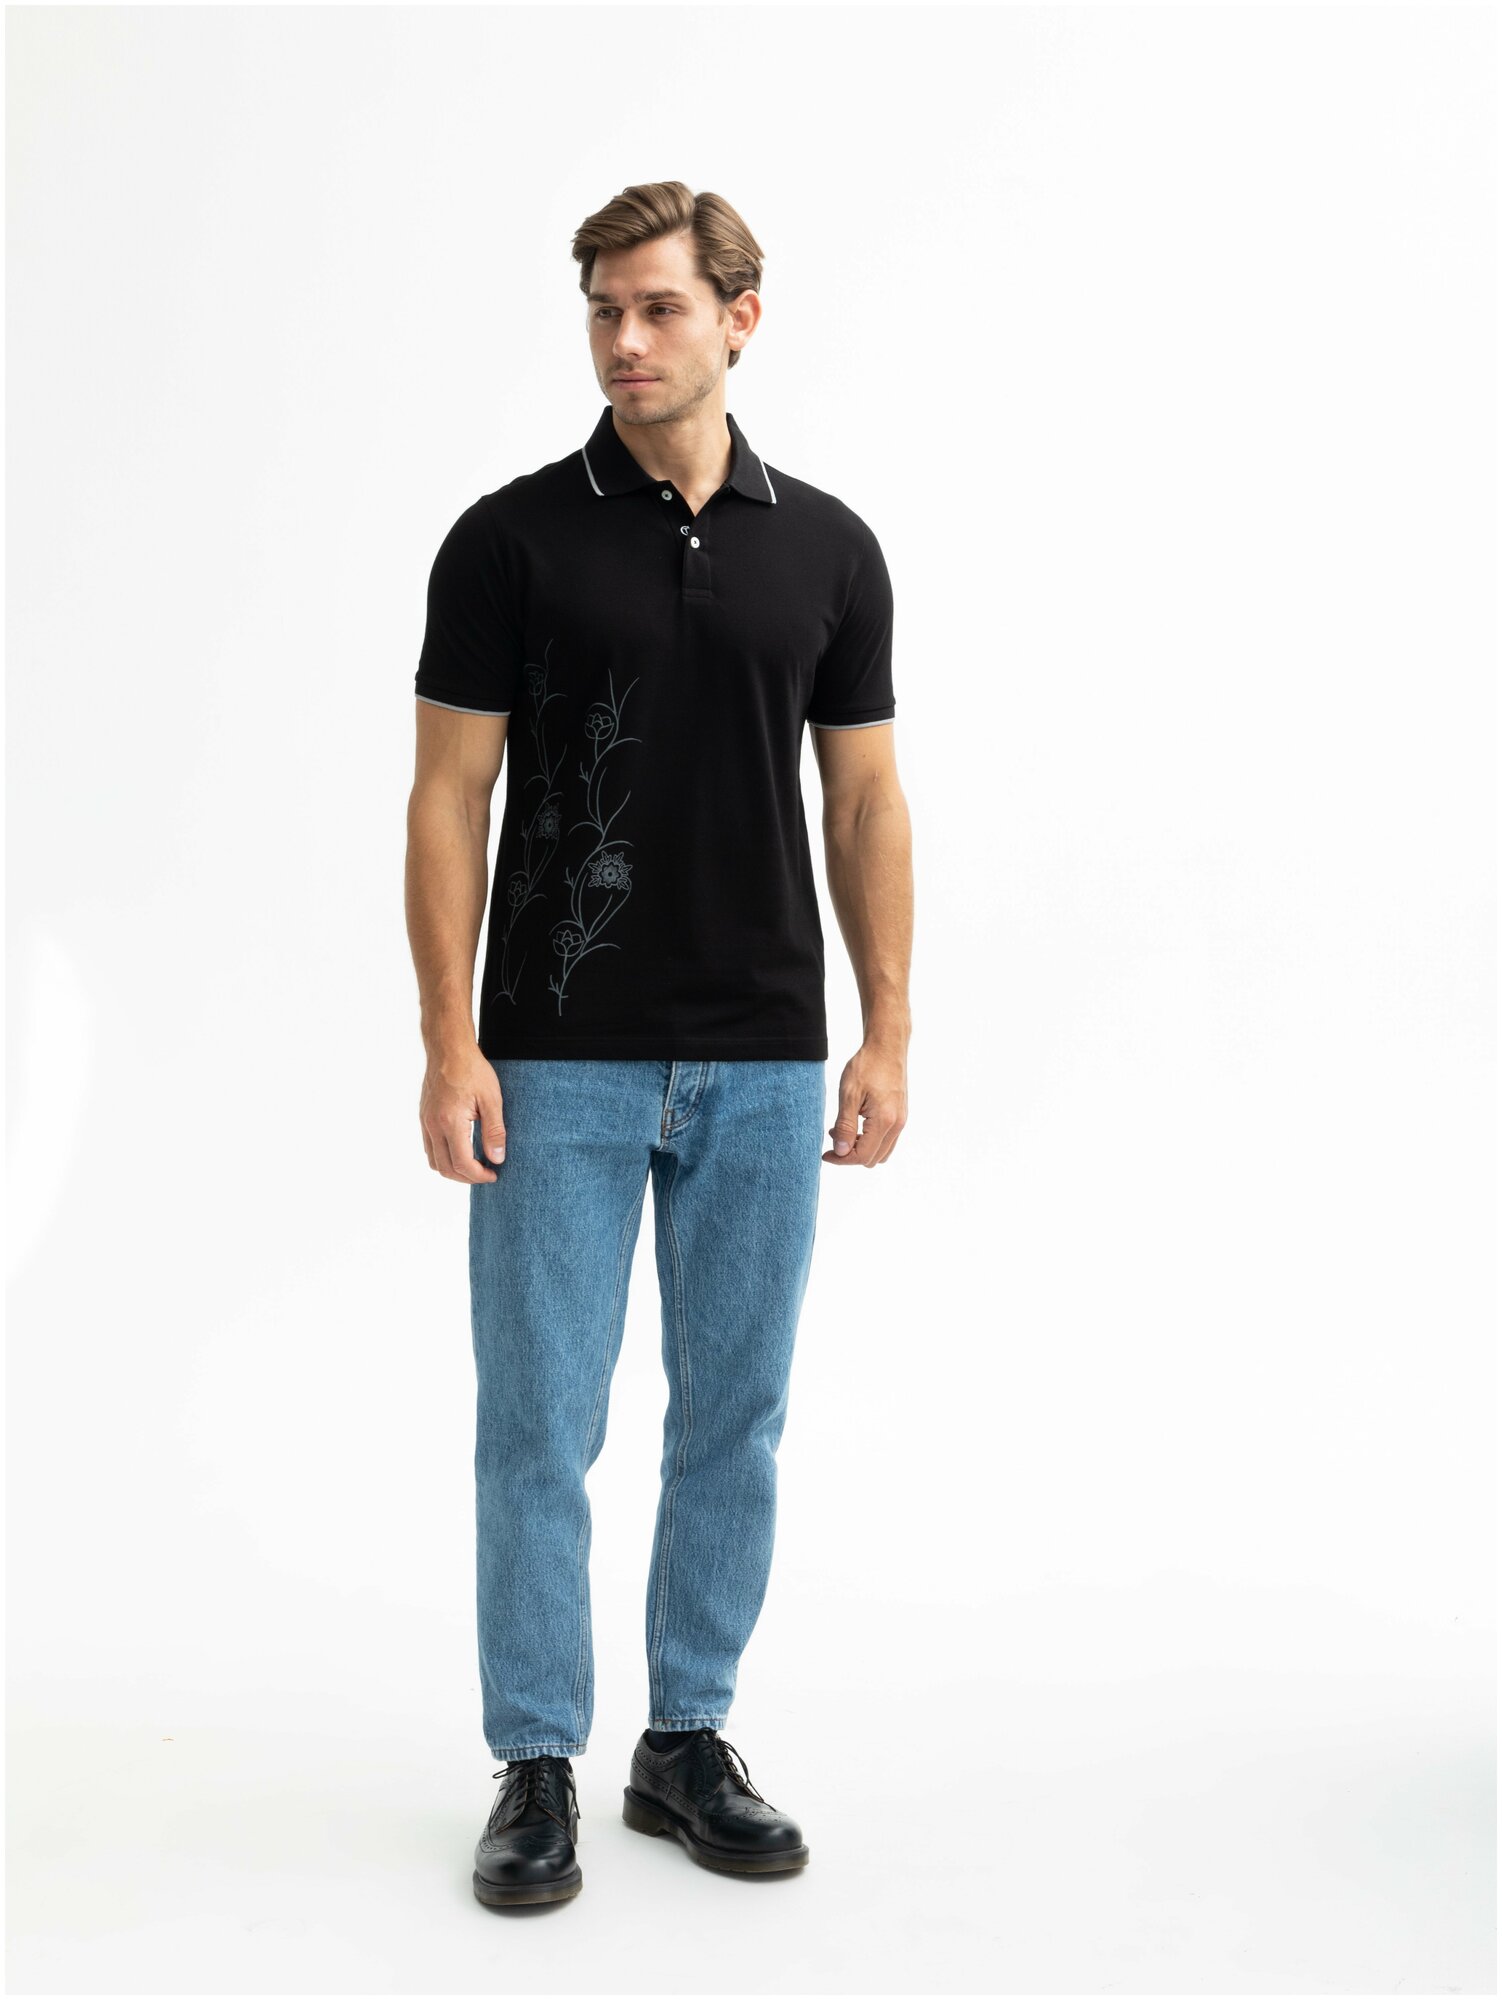 Мужская футболка-поло CaesarLeo COMFORT FIT Черная (XL) 